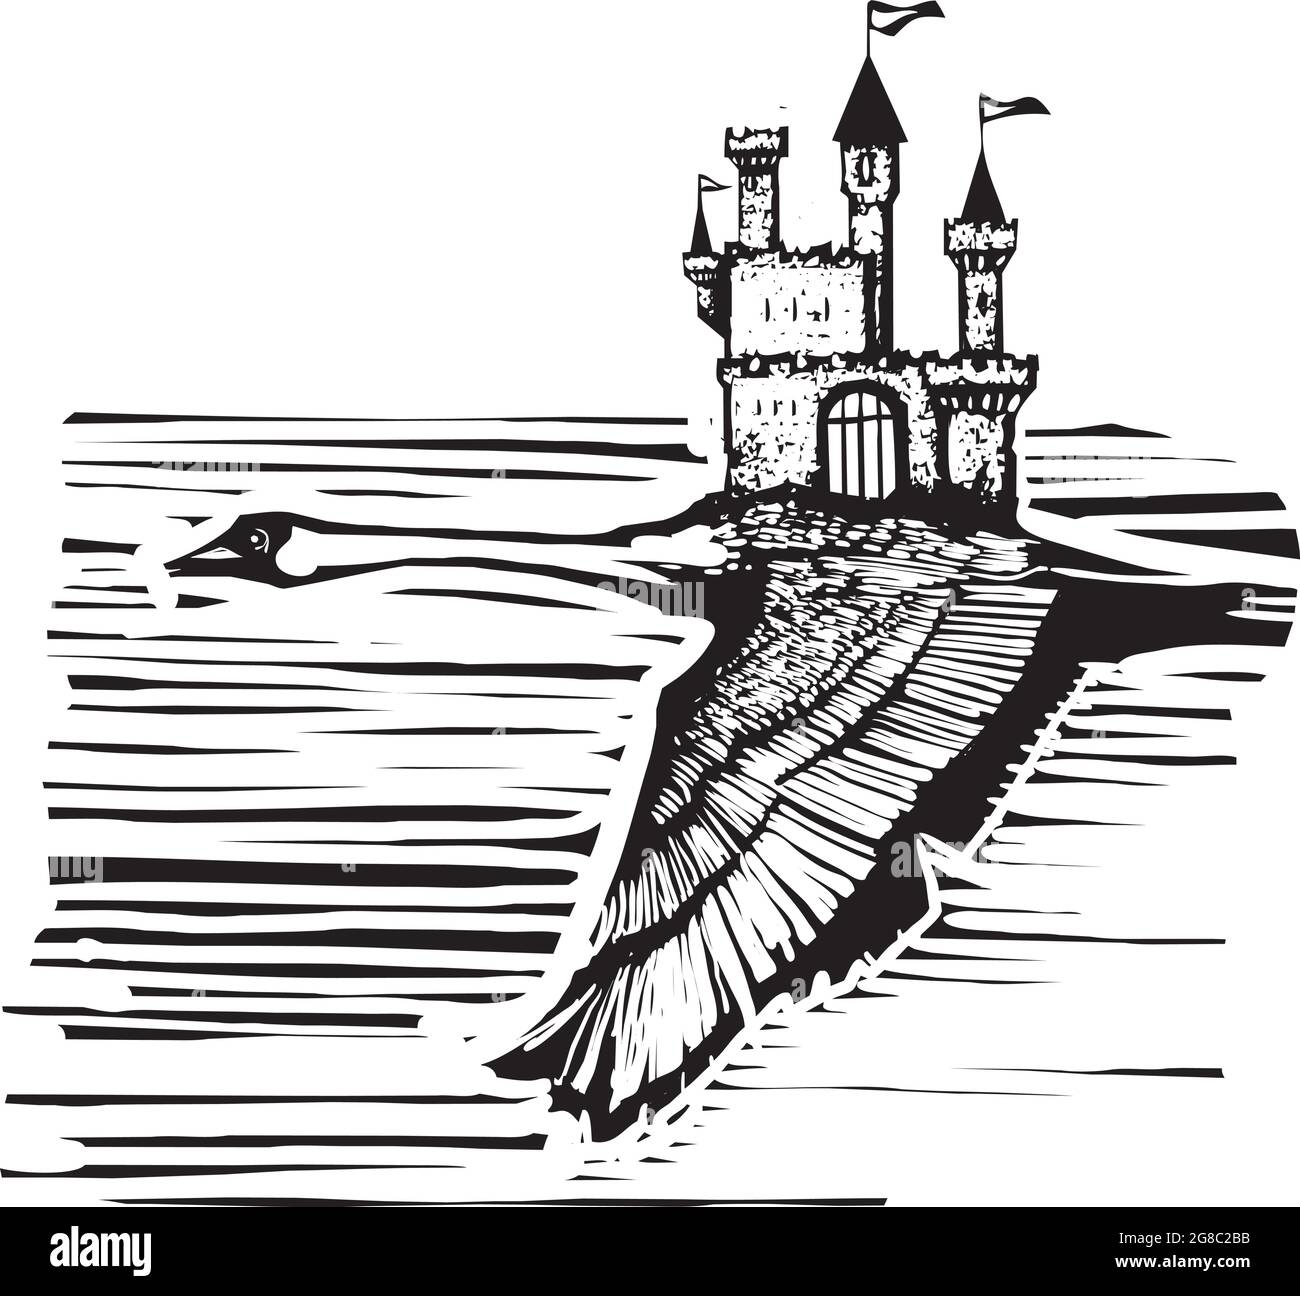 Swan im Flug mit einem Märchenschloss auf dem Rücken im expressionistischen Holzschnitt Stock Vektor